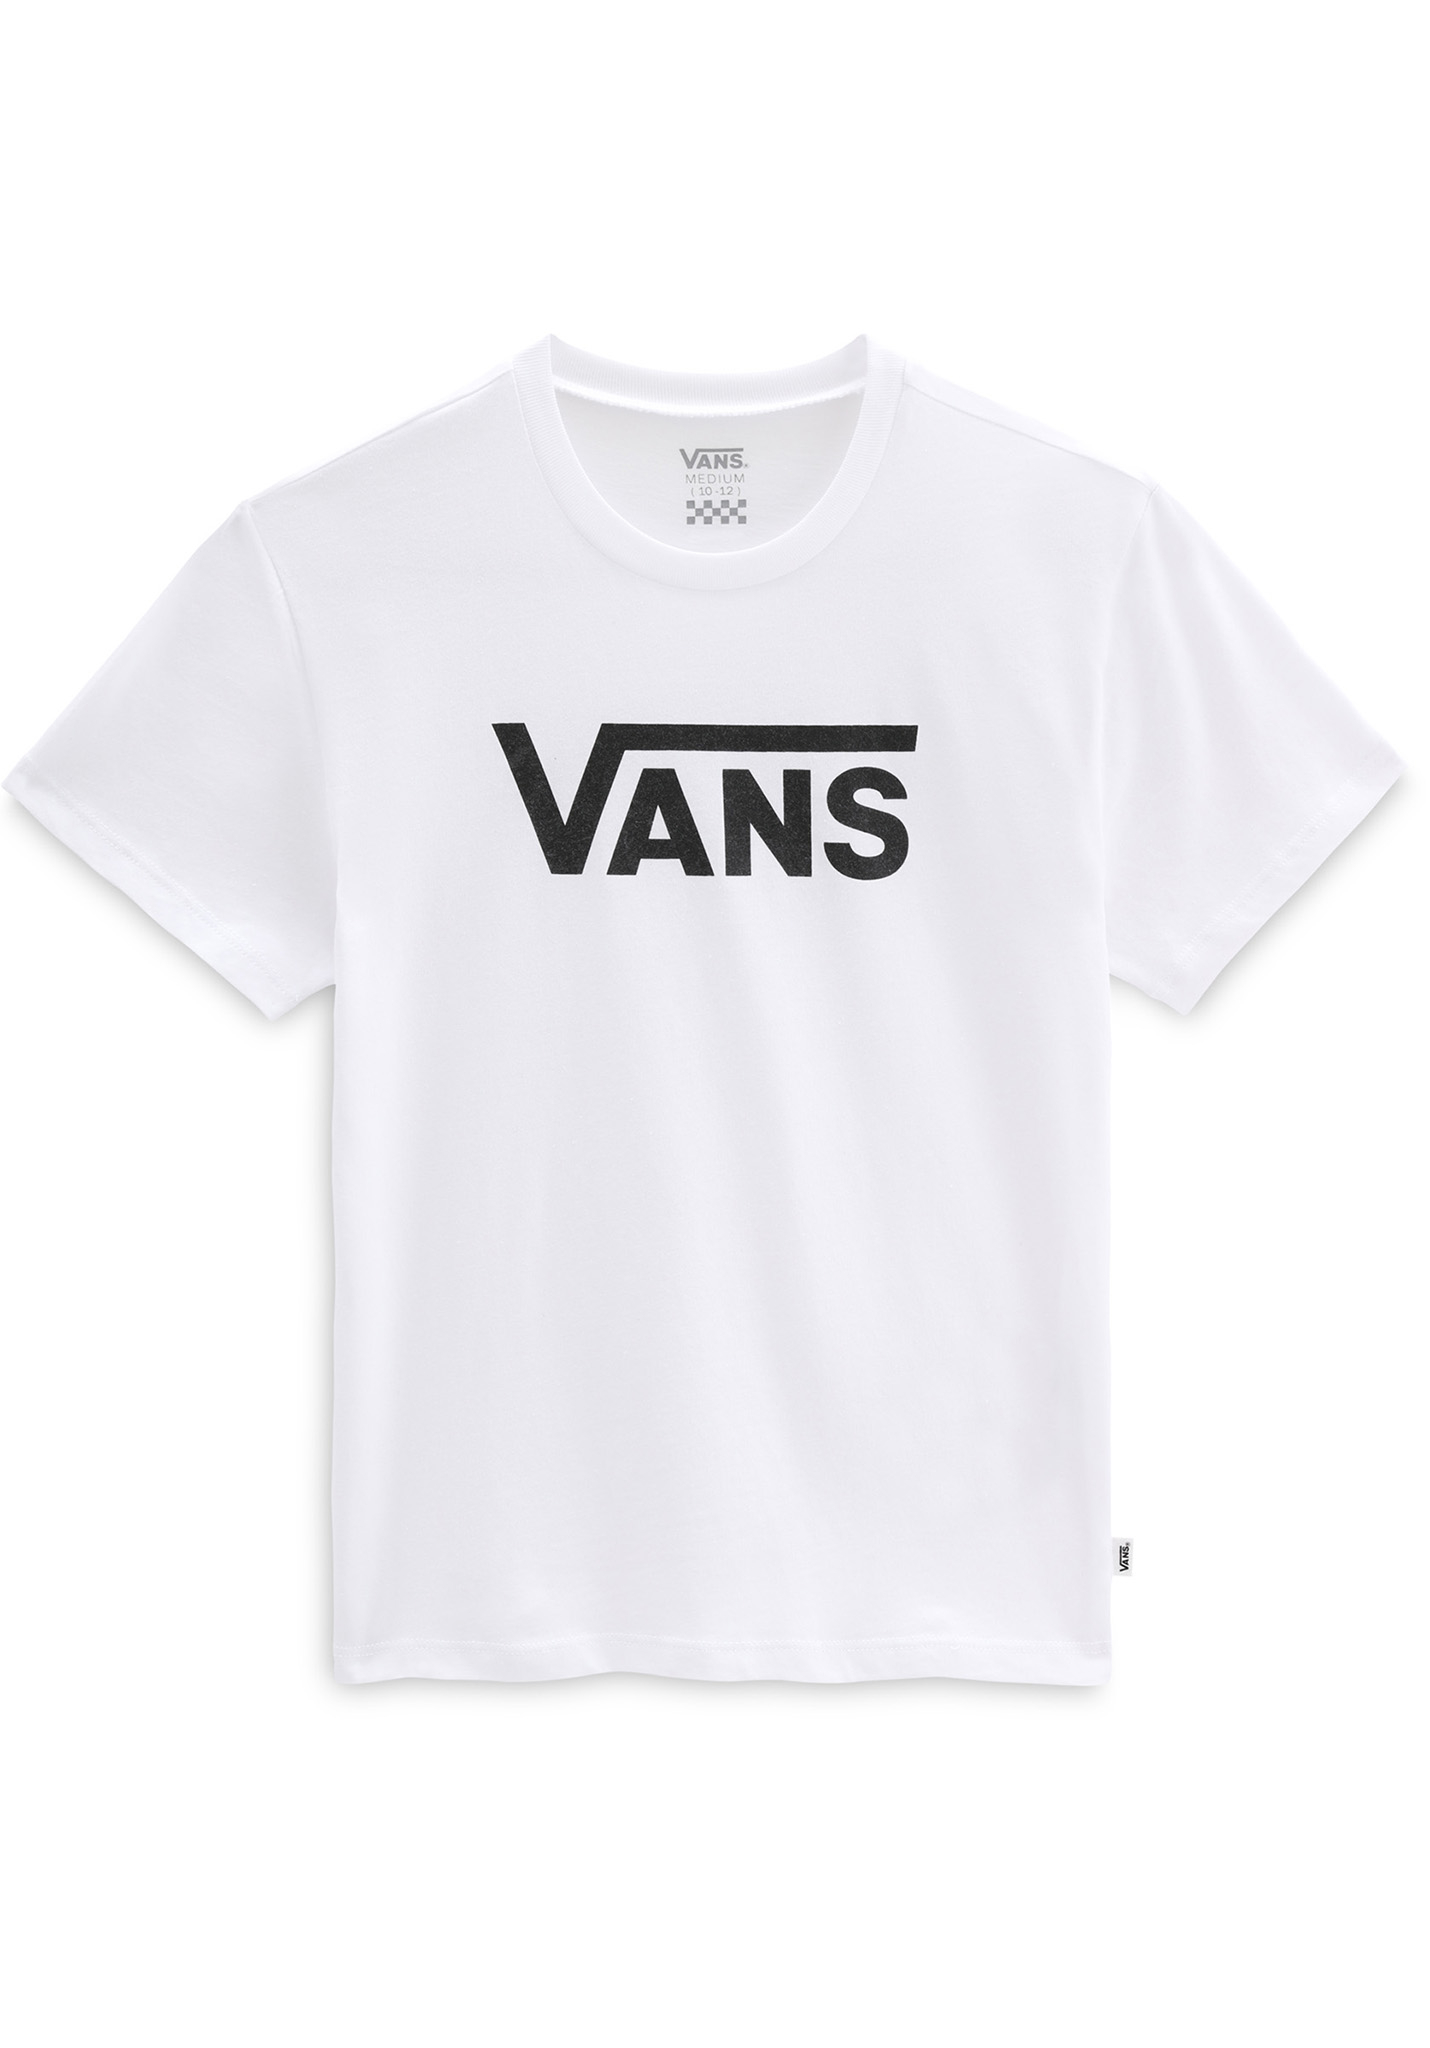 Vans Flying V T-Shirt weiß XL